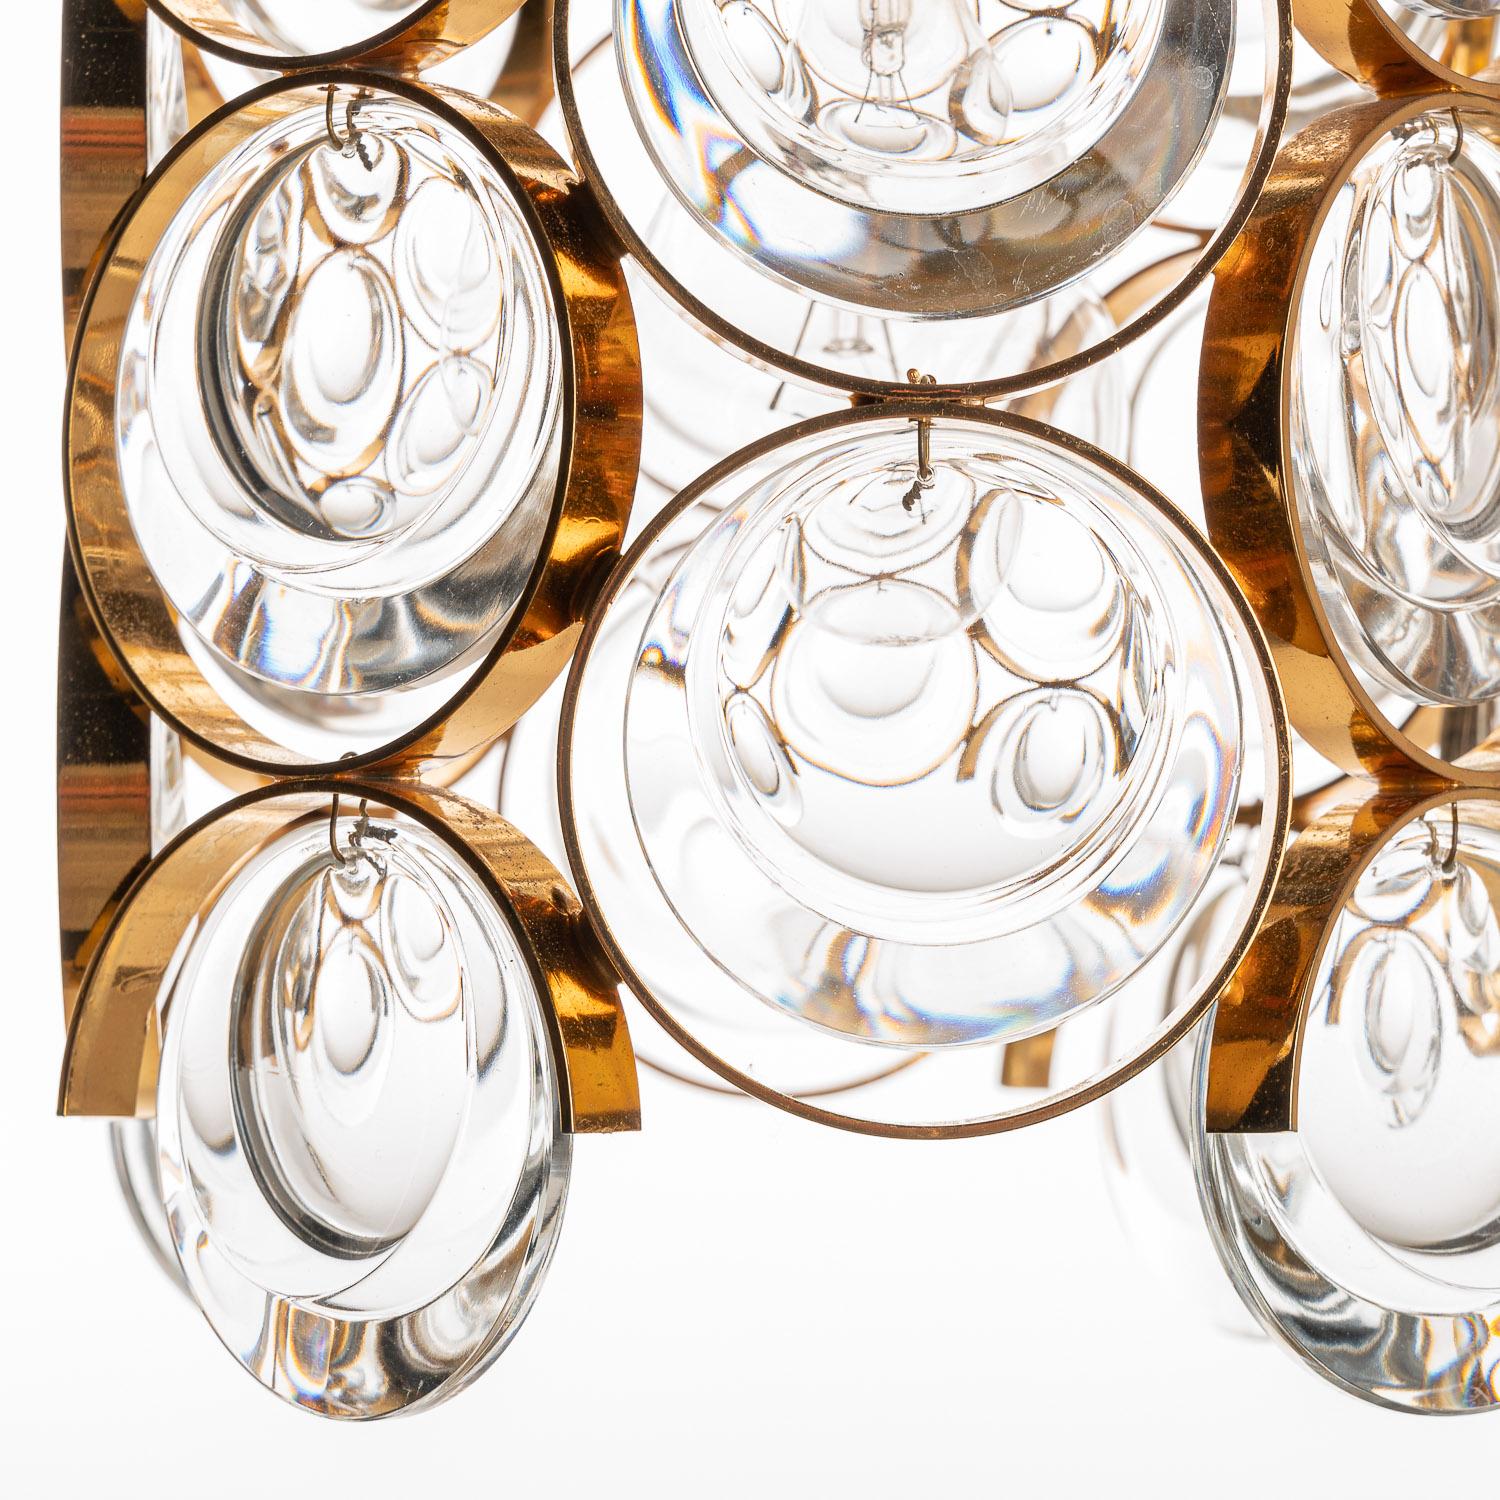 Kleiner Anhänger von Palwa. Besteht aus einem vergoldeten Messingrahmen und Ringen mit Kristallglas-